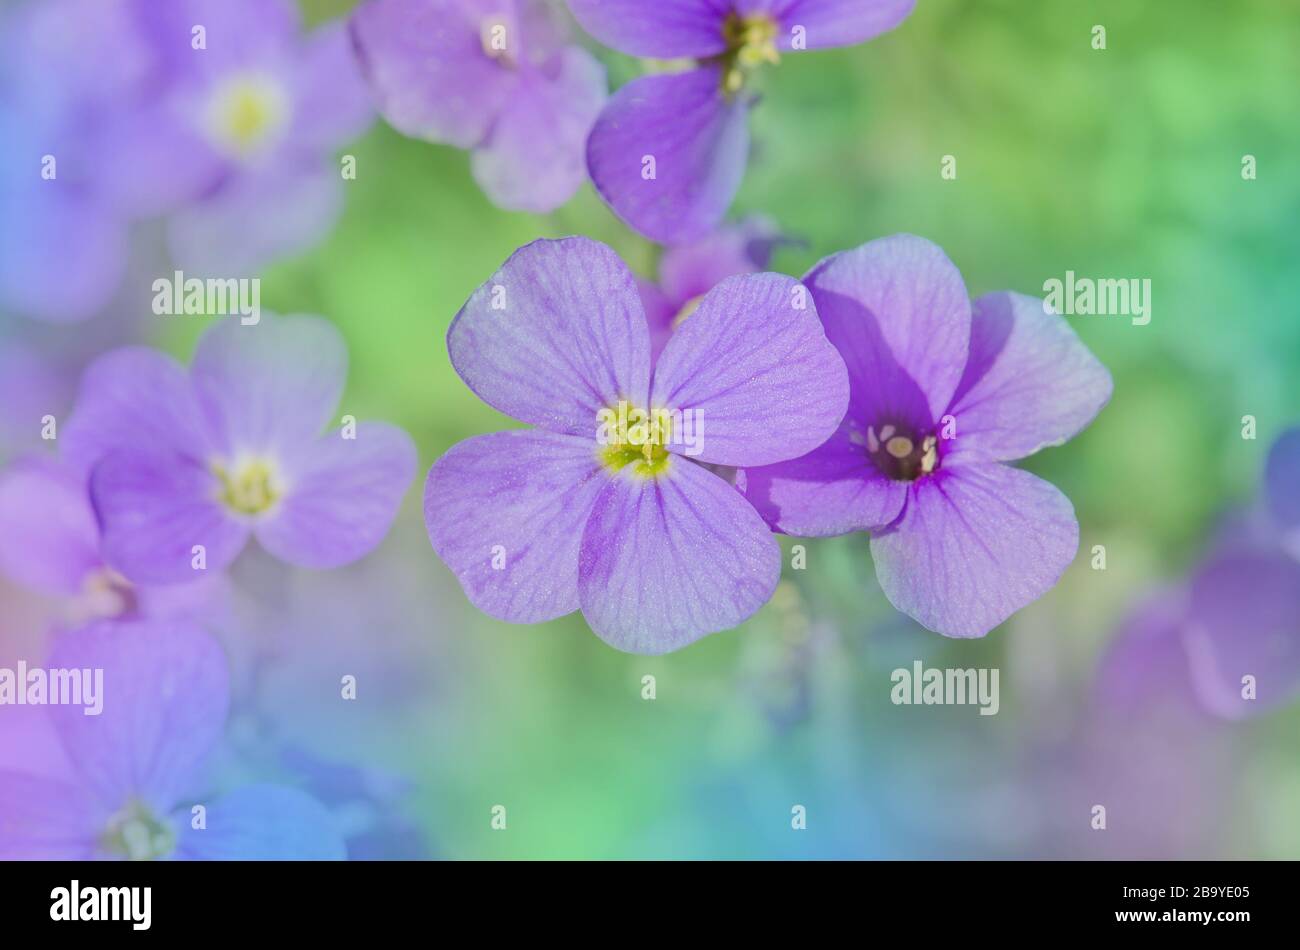 Close up of purple blossoms of Aubrieta flowers. Purple rock cress Aubrieta deltoidea Stock Photo